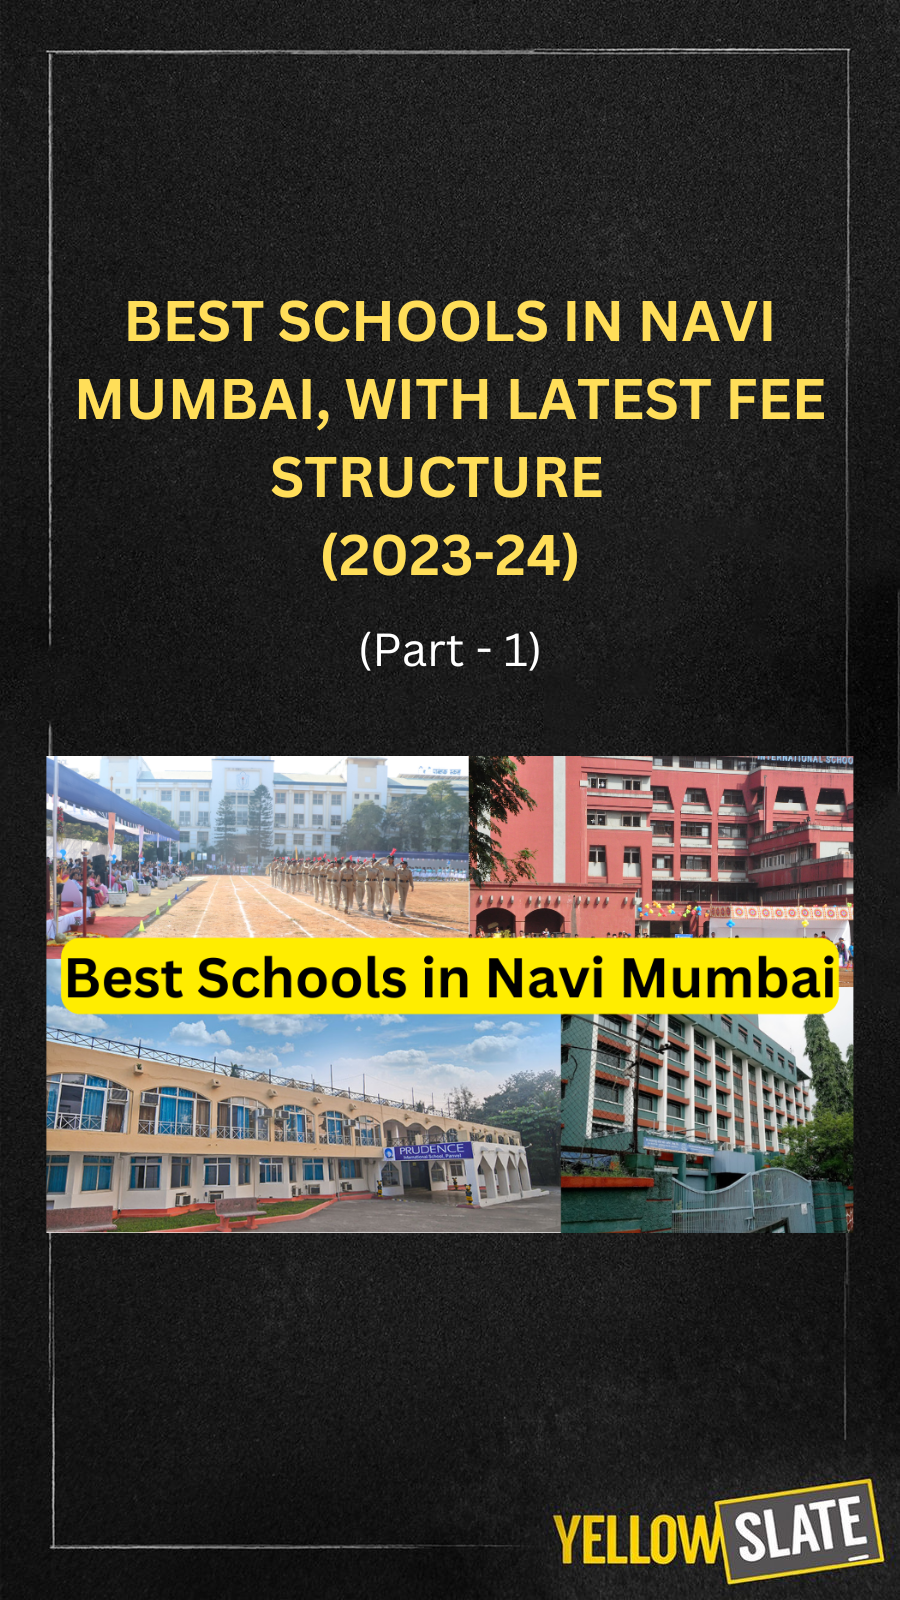 Part 2 Best Schools DELHI 1 